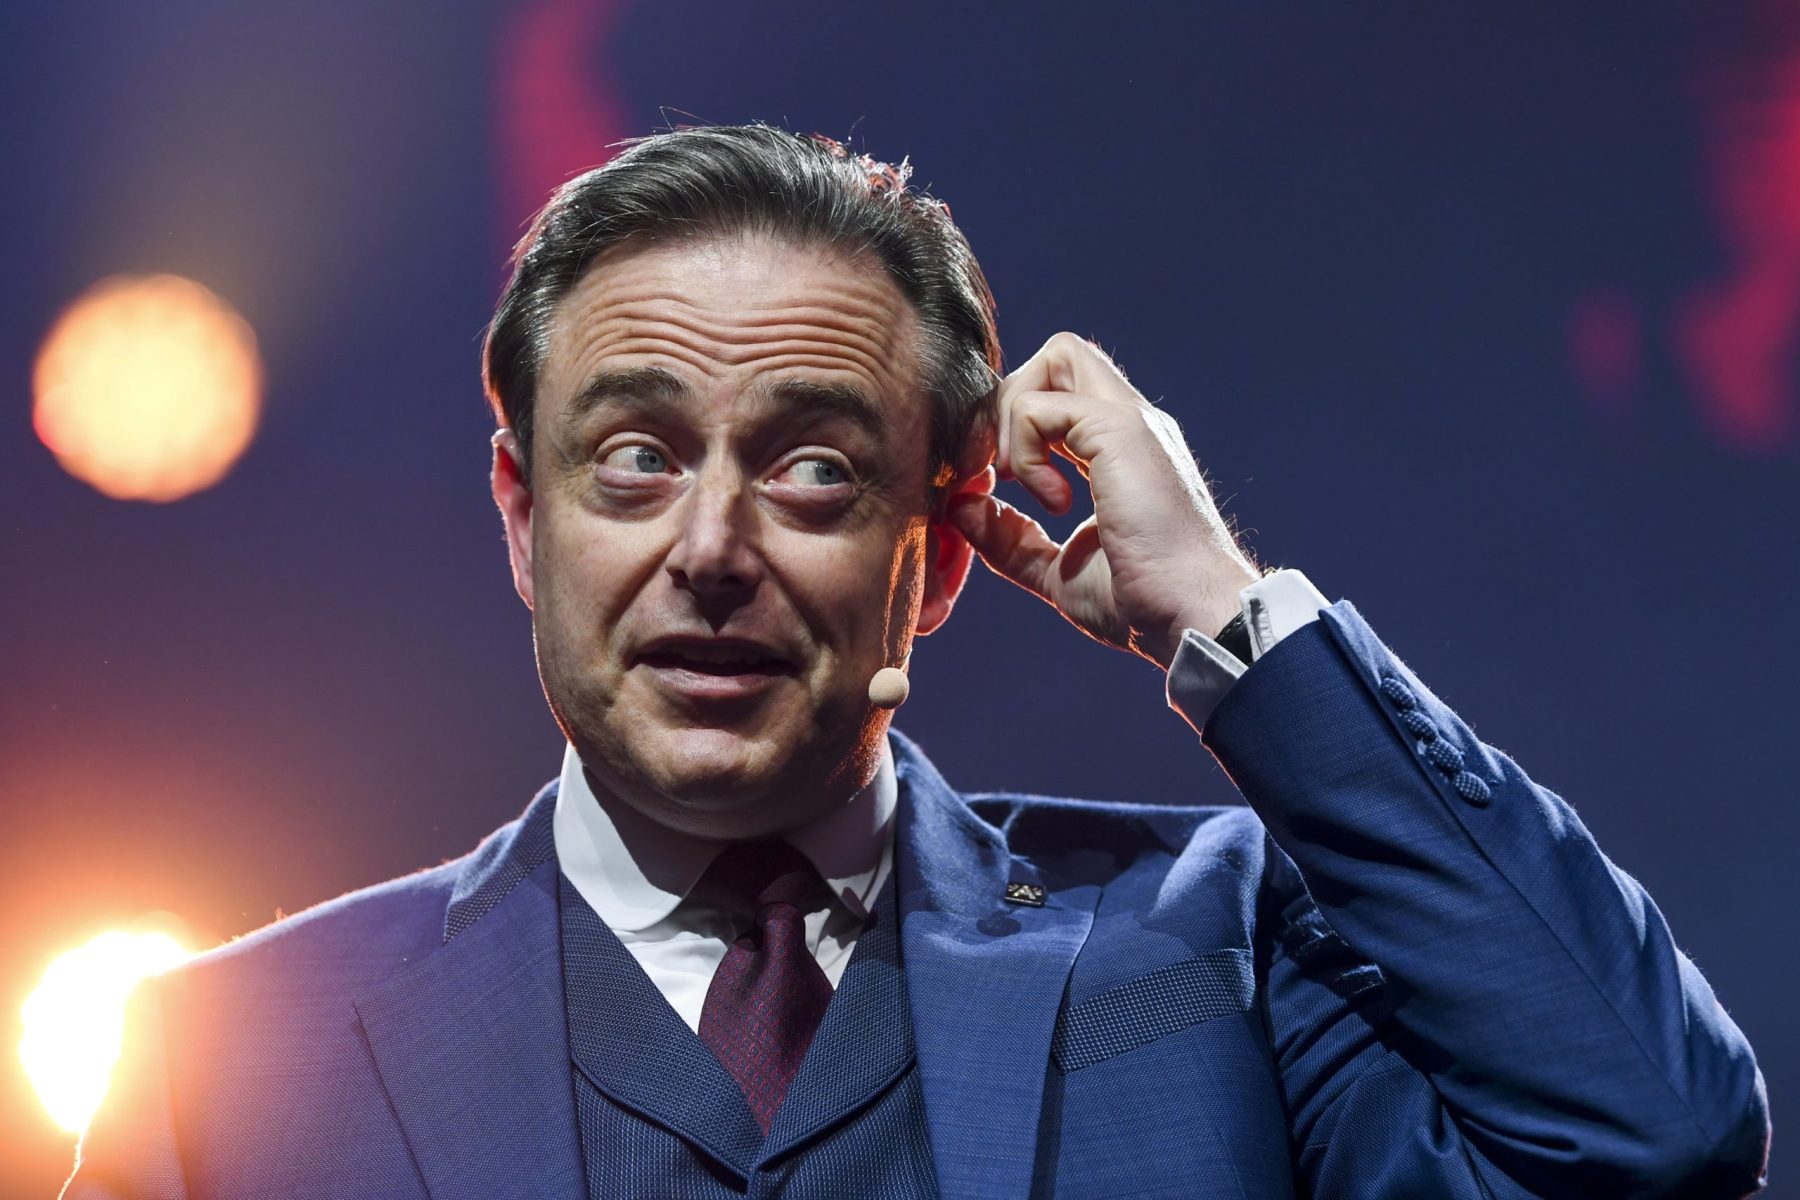 De Wever et le wokisme : le livre d’un élu politique en fin de carrière